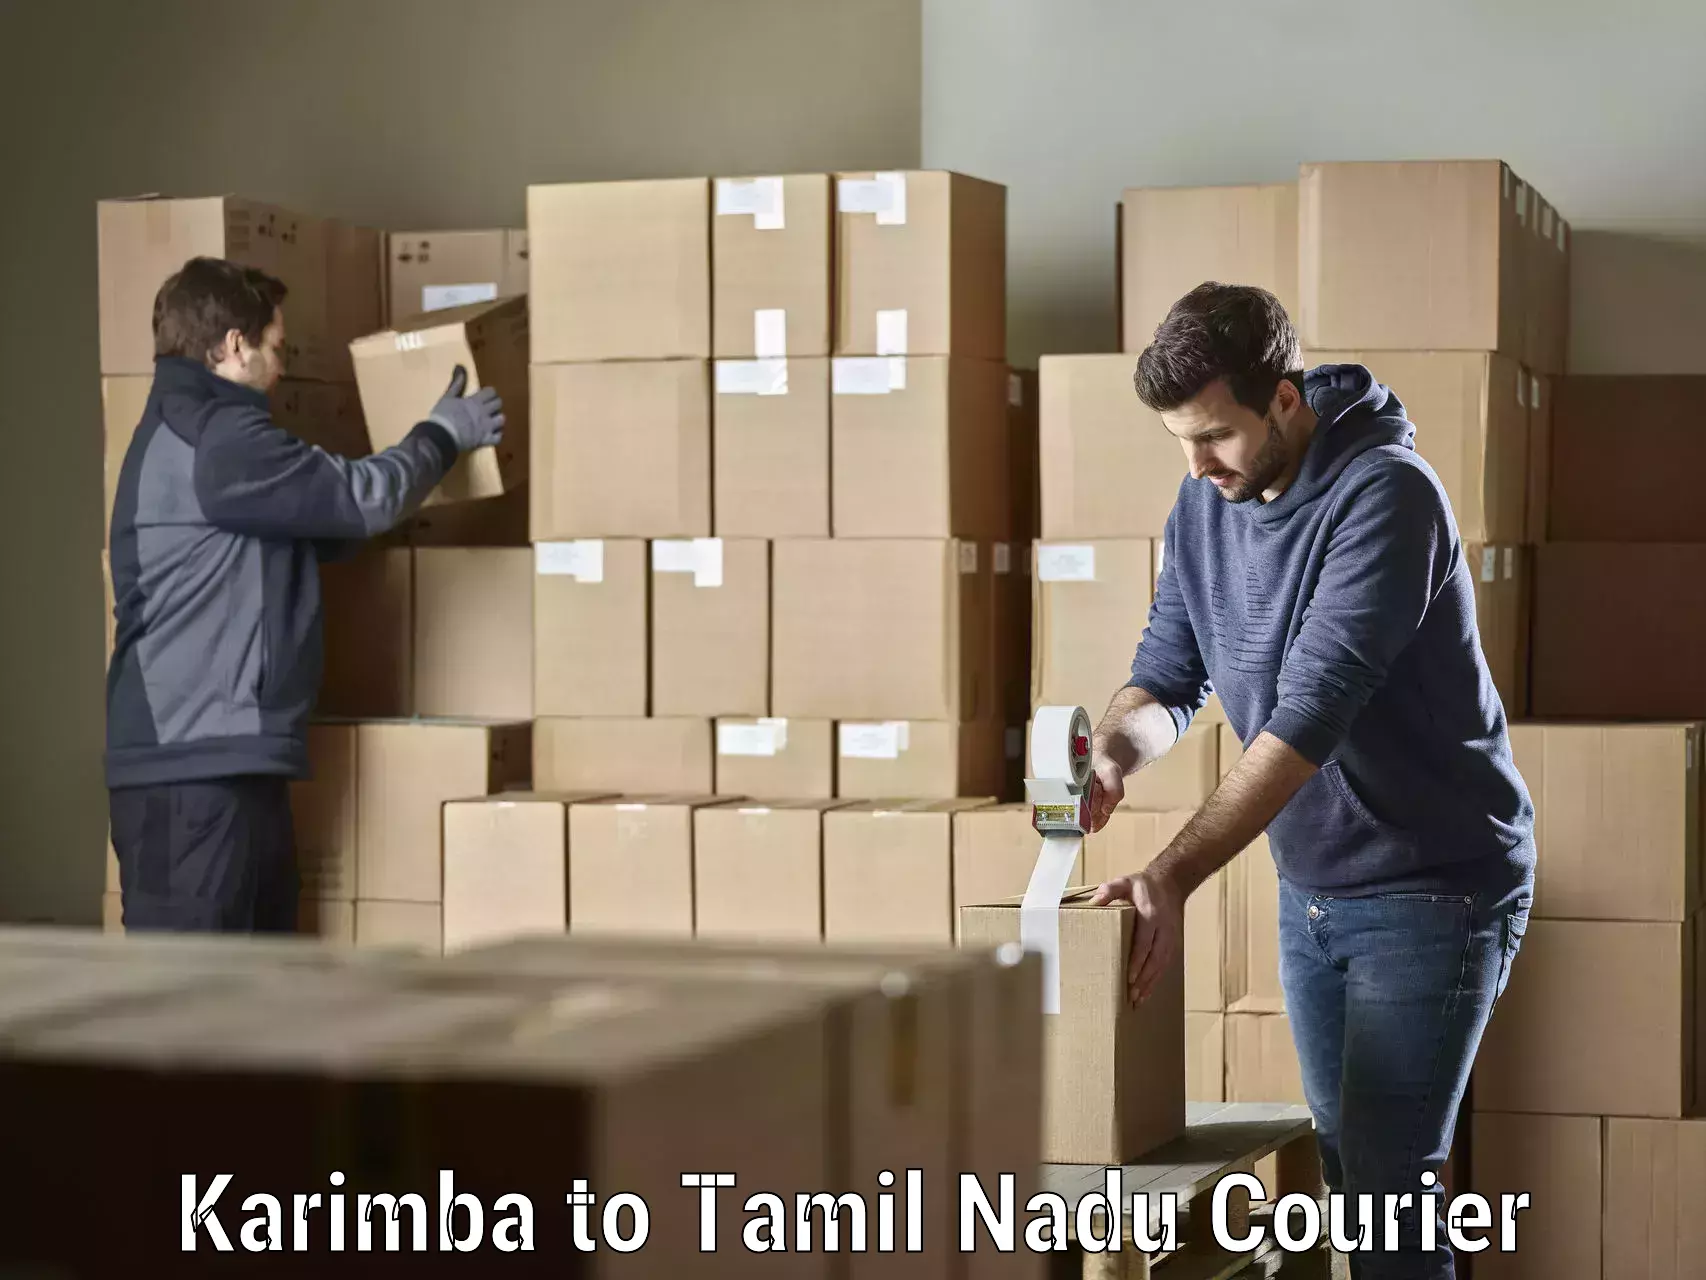 Reliable delivery network Karimba to Thiruvadanai